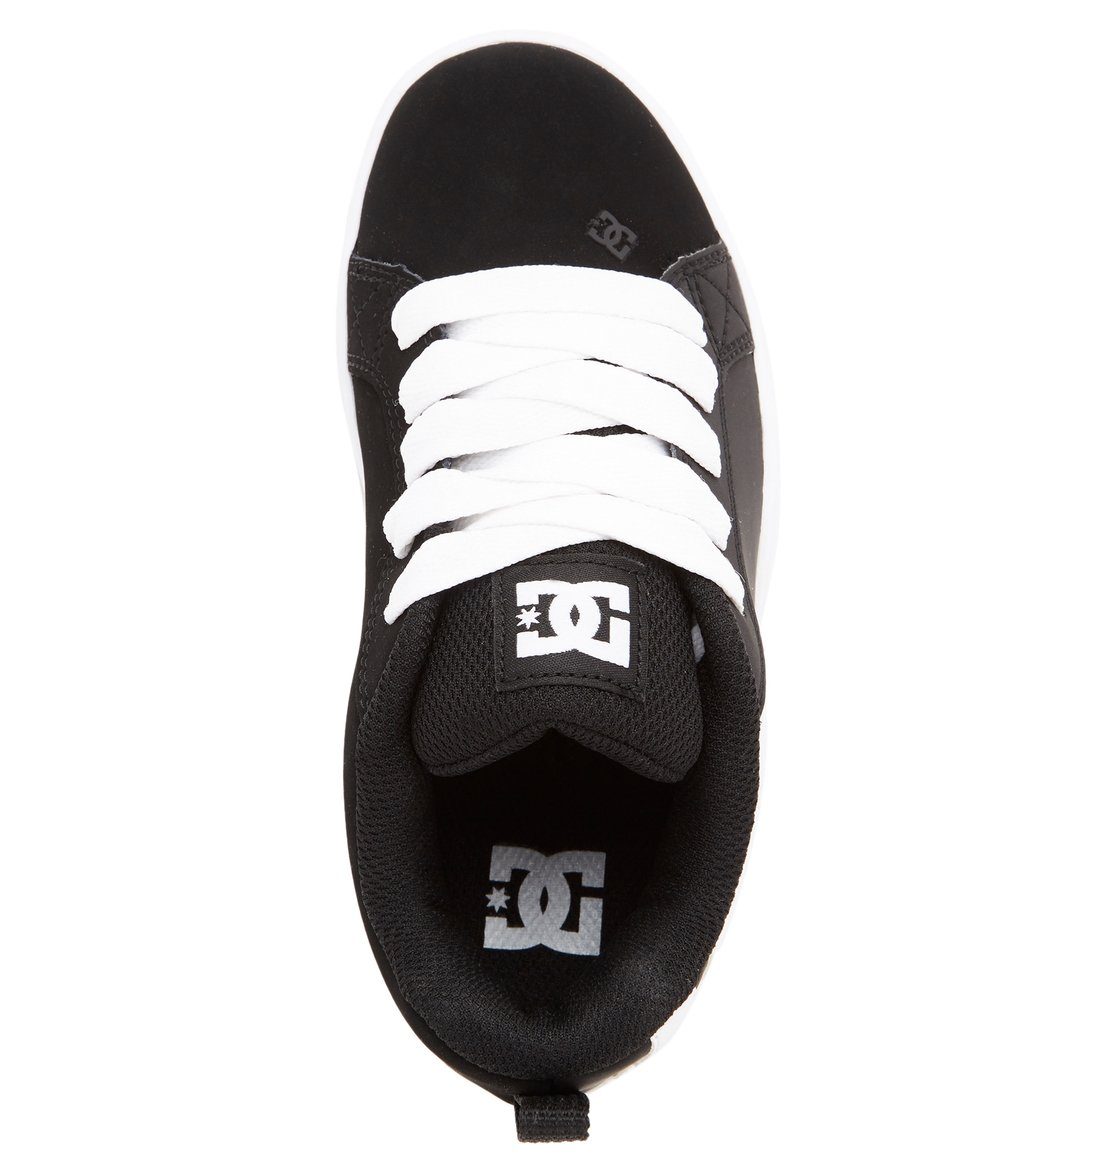 Black/White Graffik Court Sneaker DC Shoes